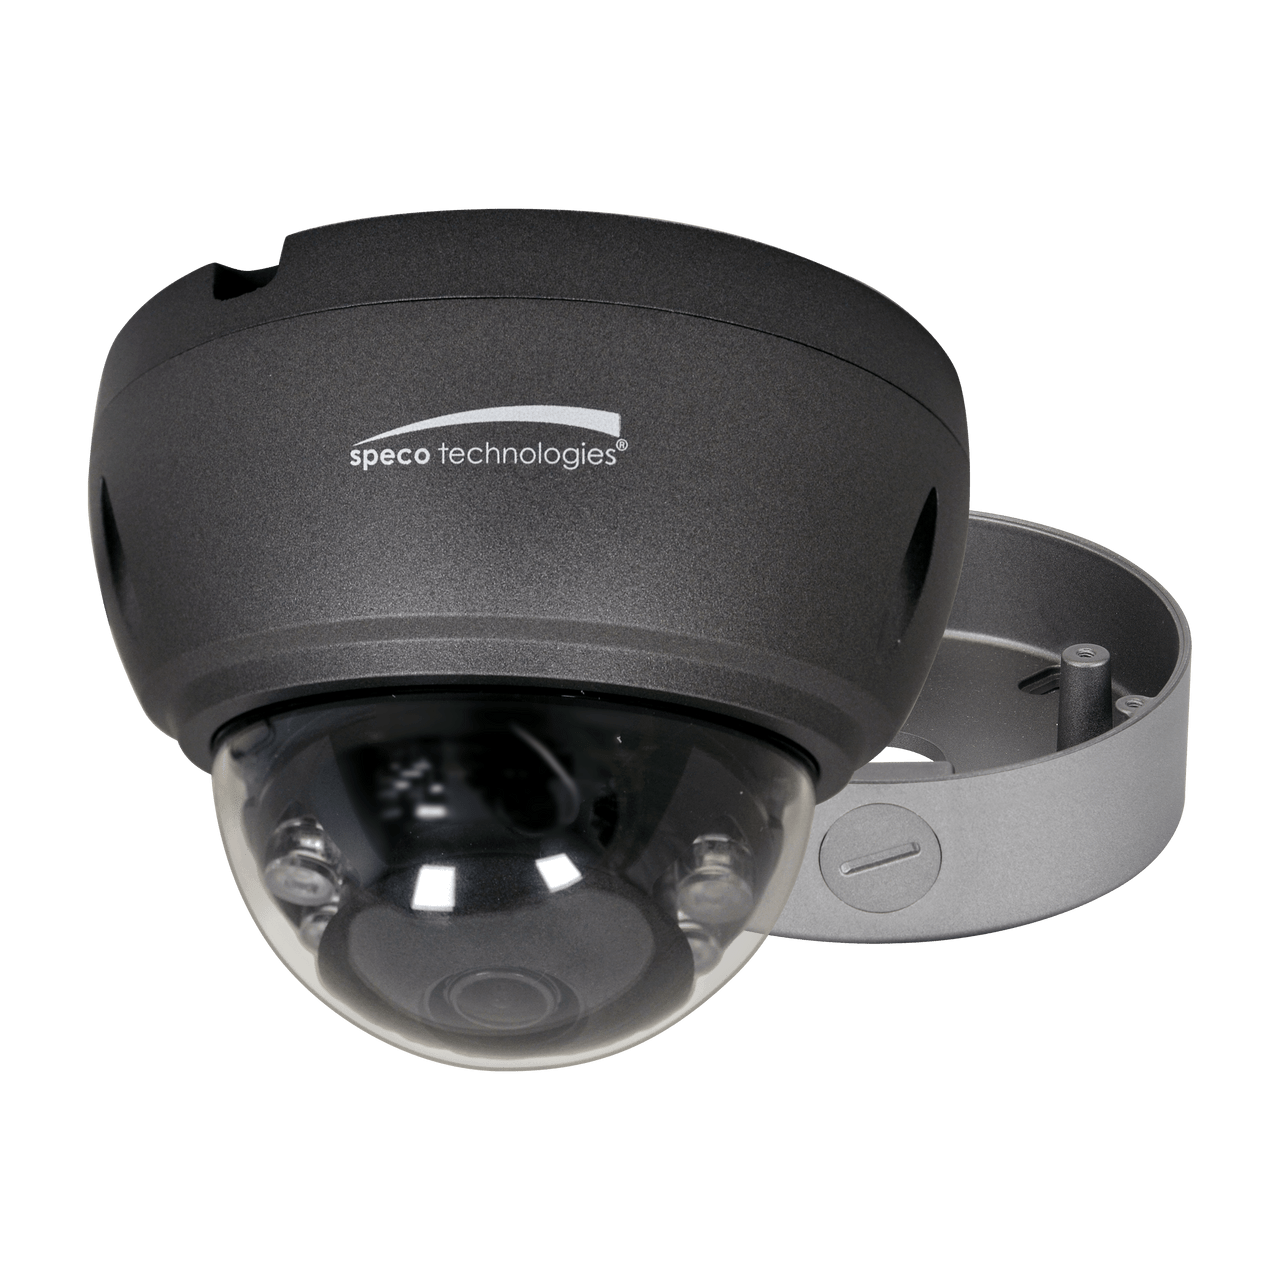 Speco Technologies VLT4DG 4MP HD-TVI Dome Camera, IR, 2.8mm lens, Grey housing, Included Junc Box (VLT4DG)